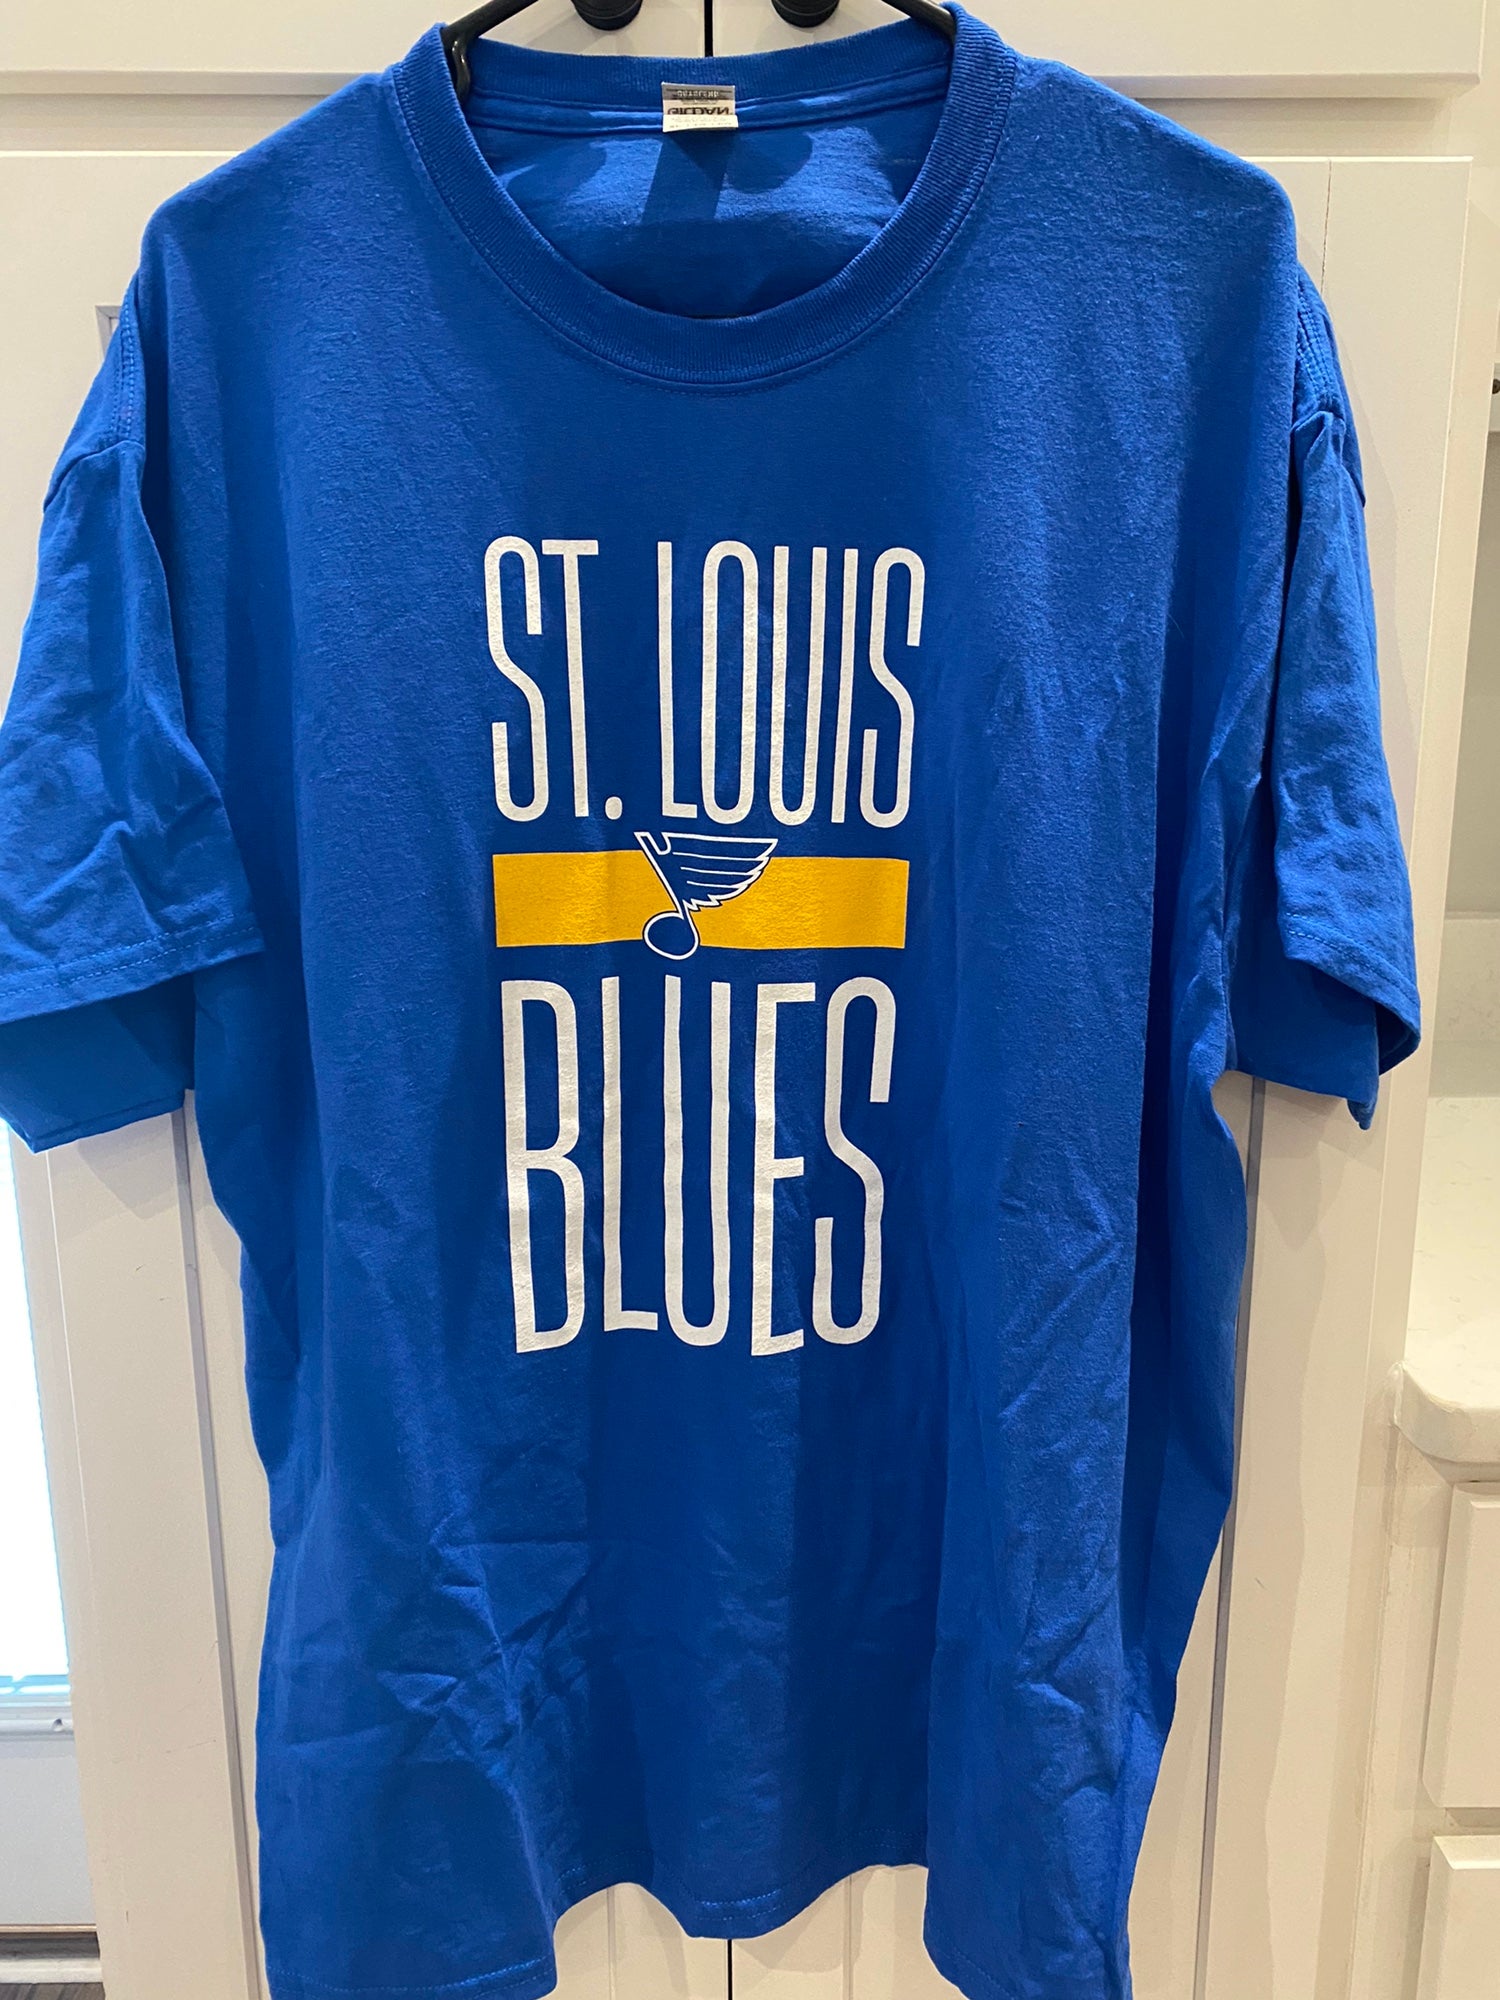 NHL OFFICIAL ST. LOUIS BLUES T-SHIRT (XL)